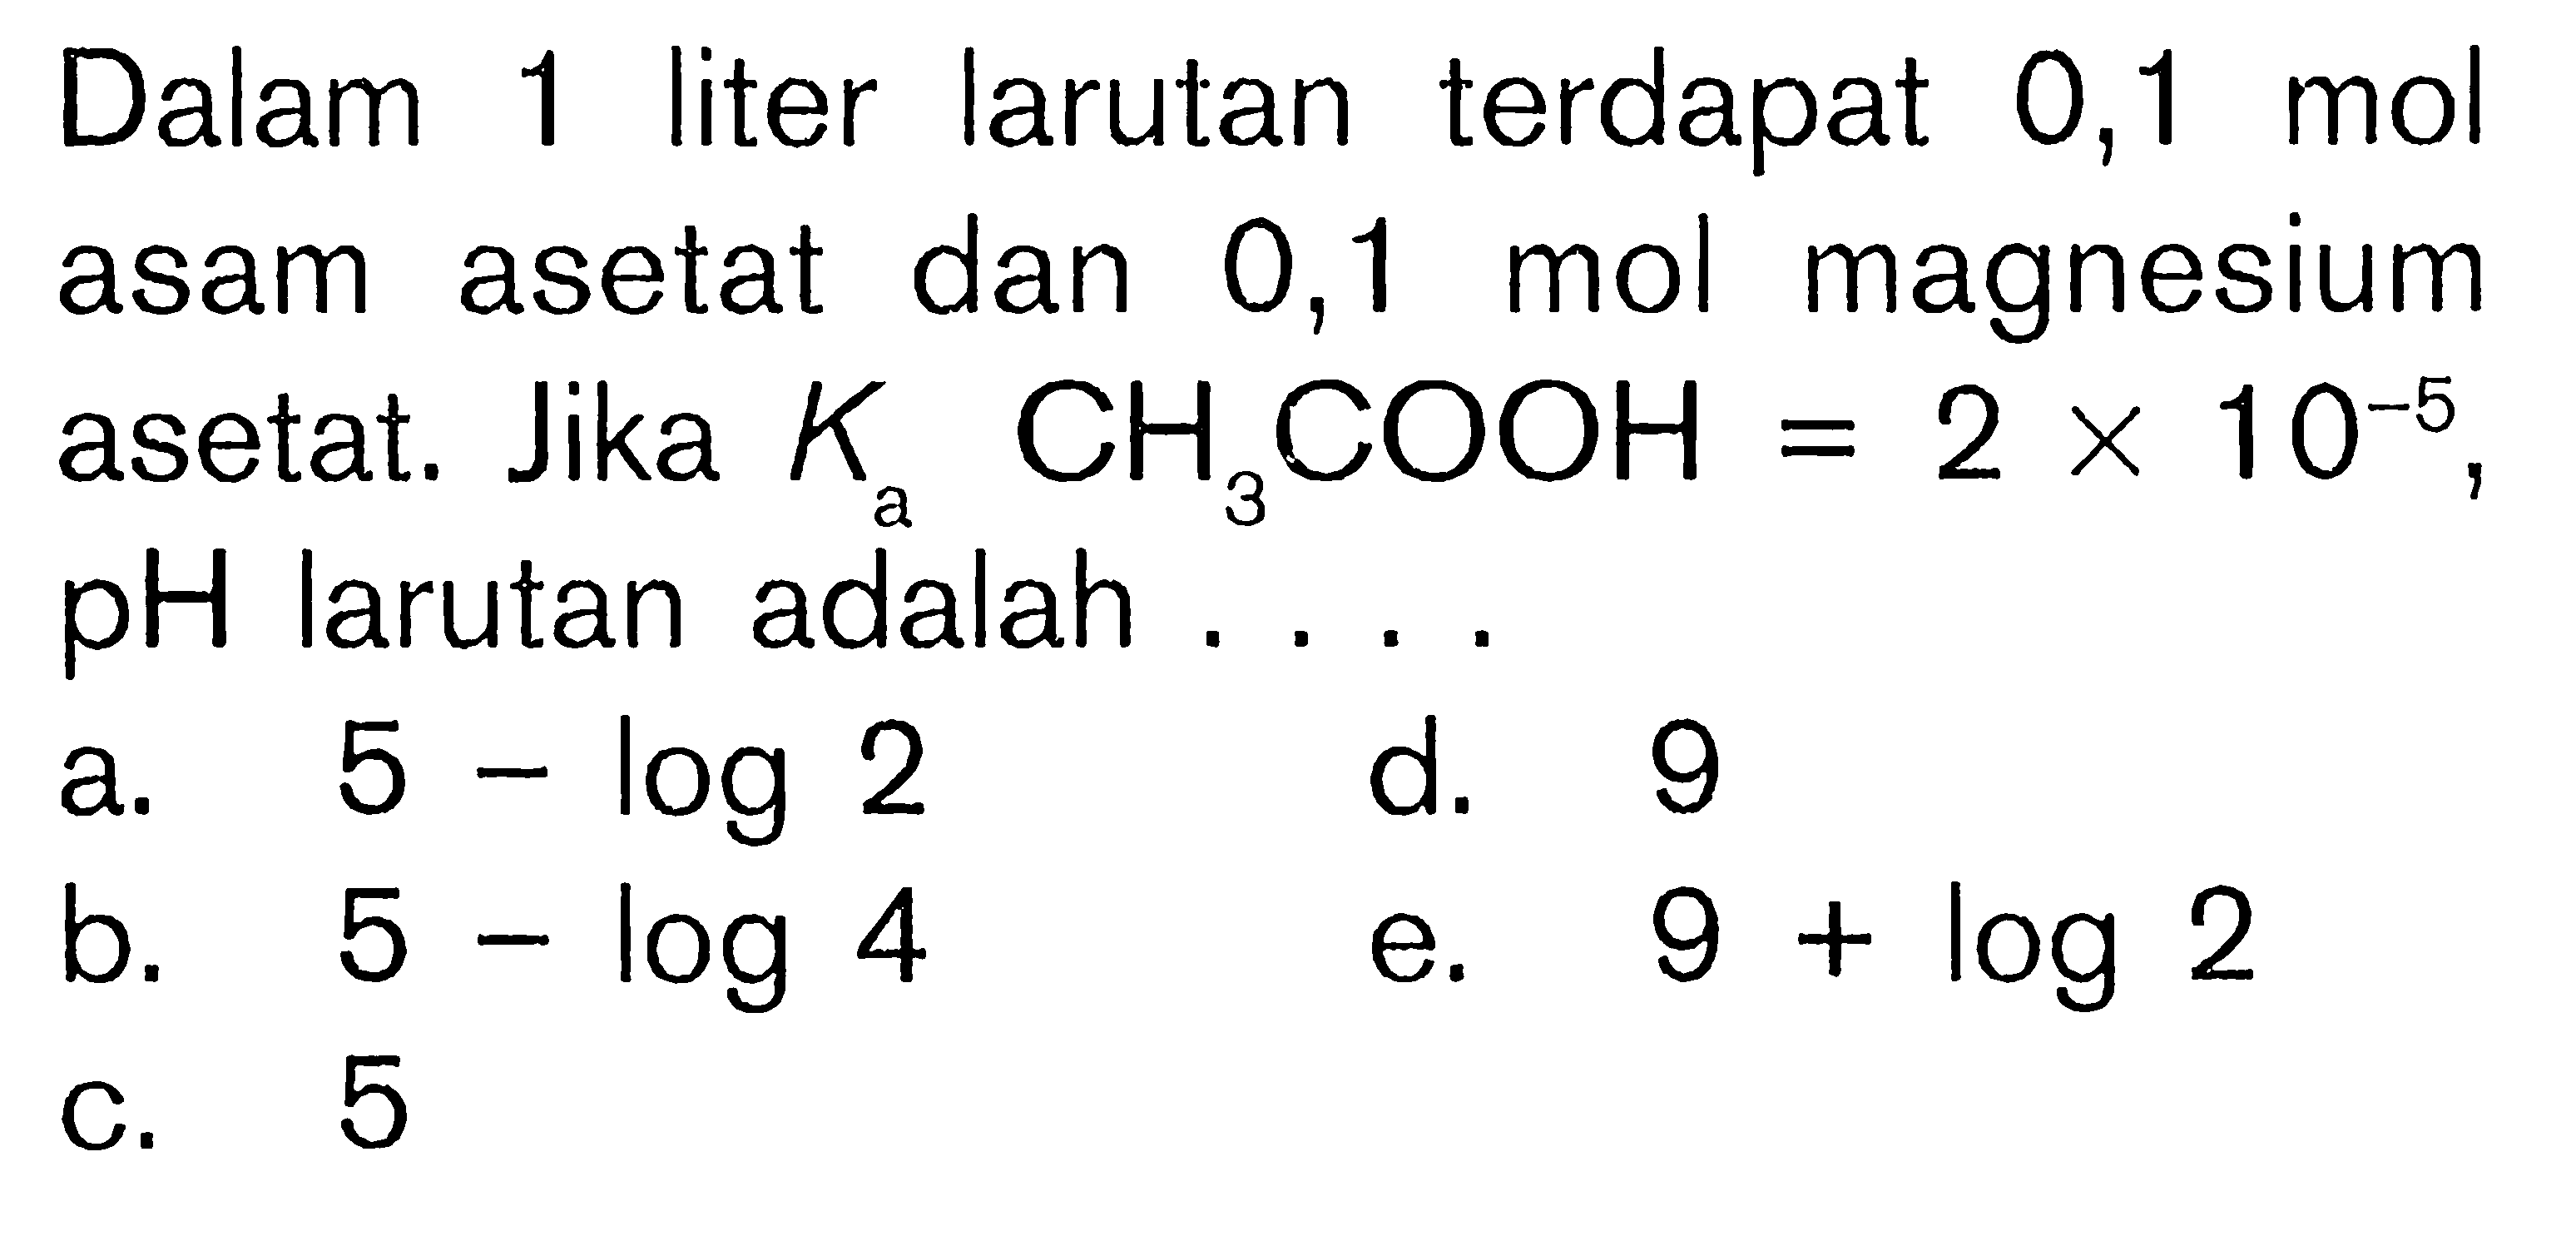 Dalam 1 liter larutan terdapat 0,1 mol asam asetat dan 0,1 mol magnesium asetat. Jika  Ka CH3COOH=2x10^(-5), pH larutan adalah ...
